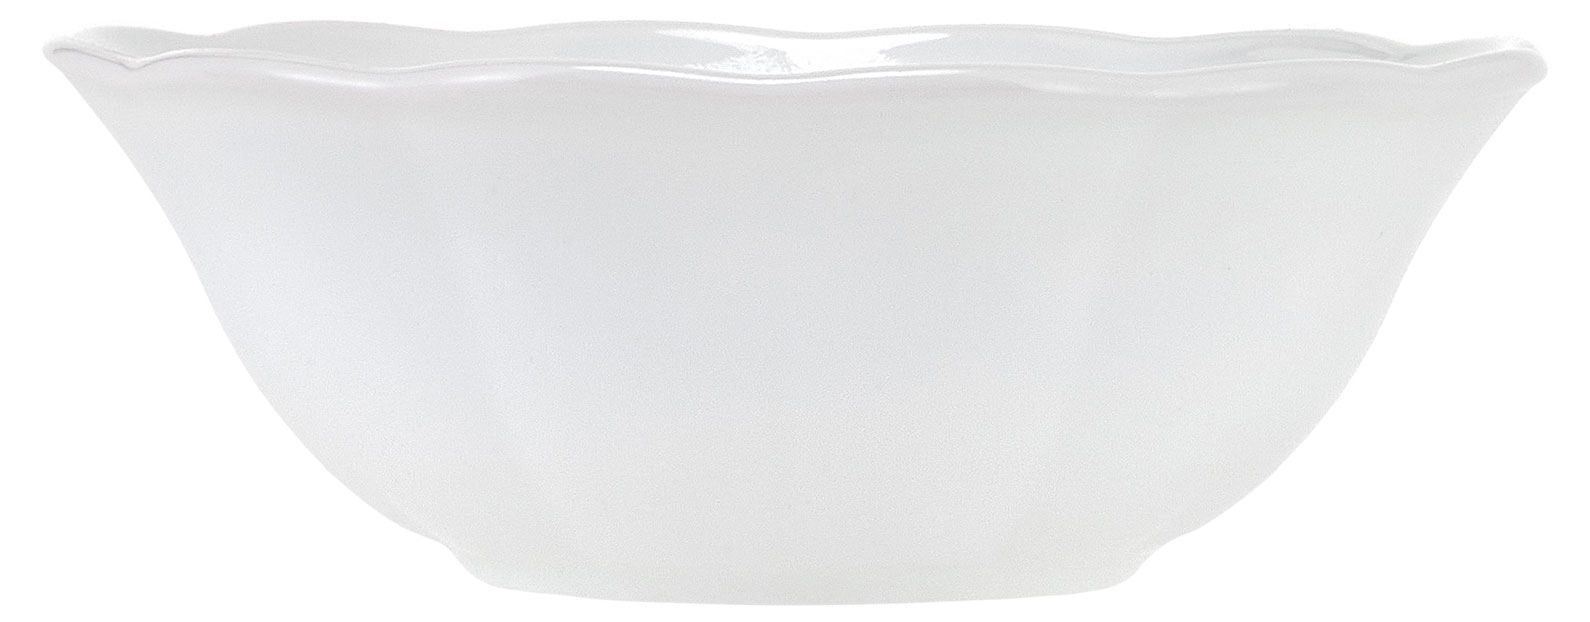 Тарелка обеденная Glory White, 26,5 см